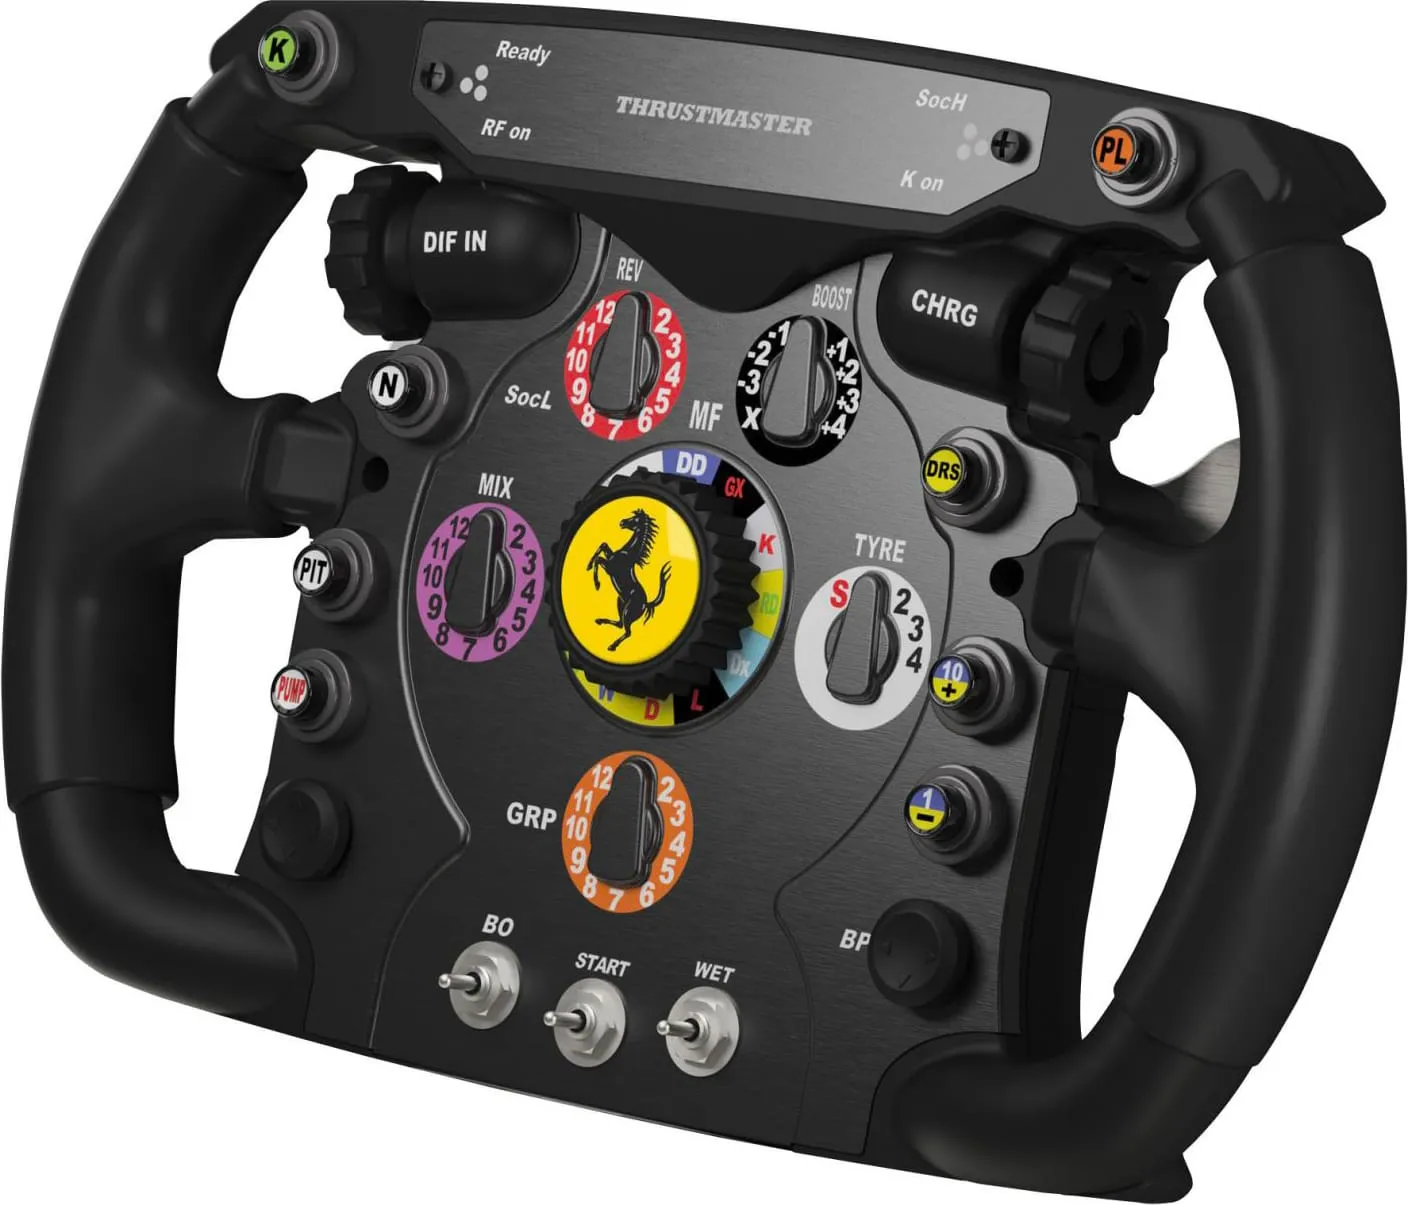 THRUSTMASTER Volante Speciale PC USB 2.0 colore Nero - Ferrari F1 Wheel  Add-On 2960729